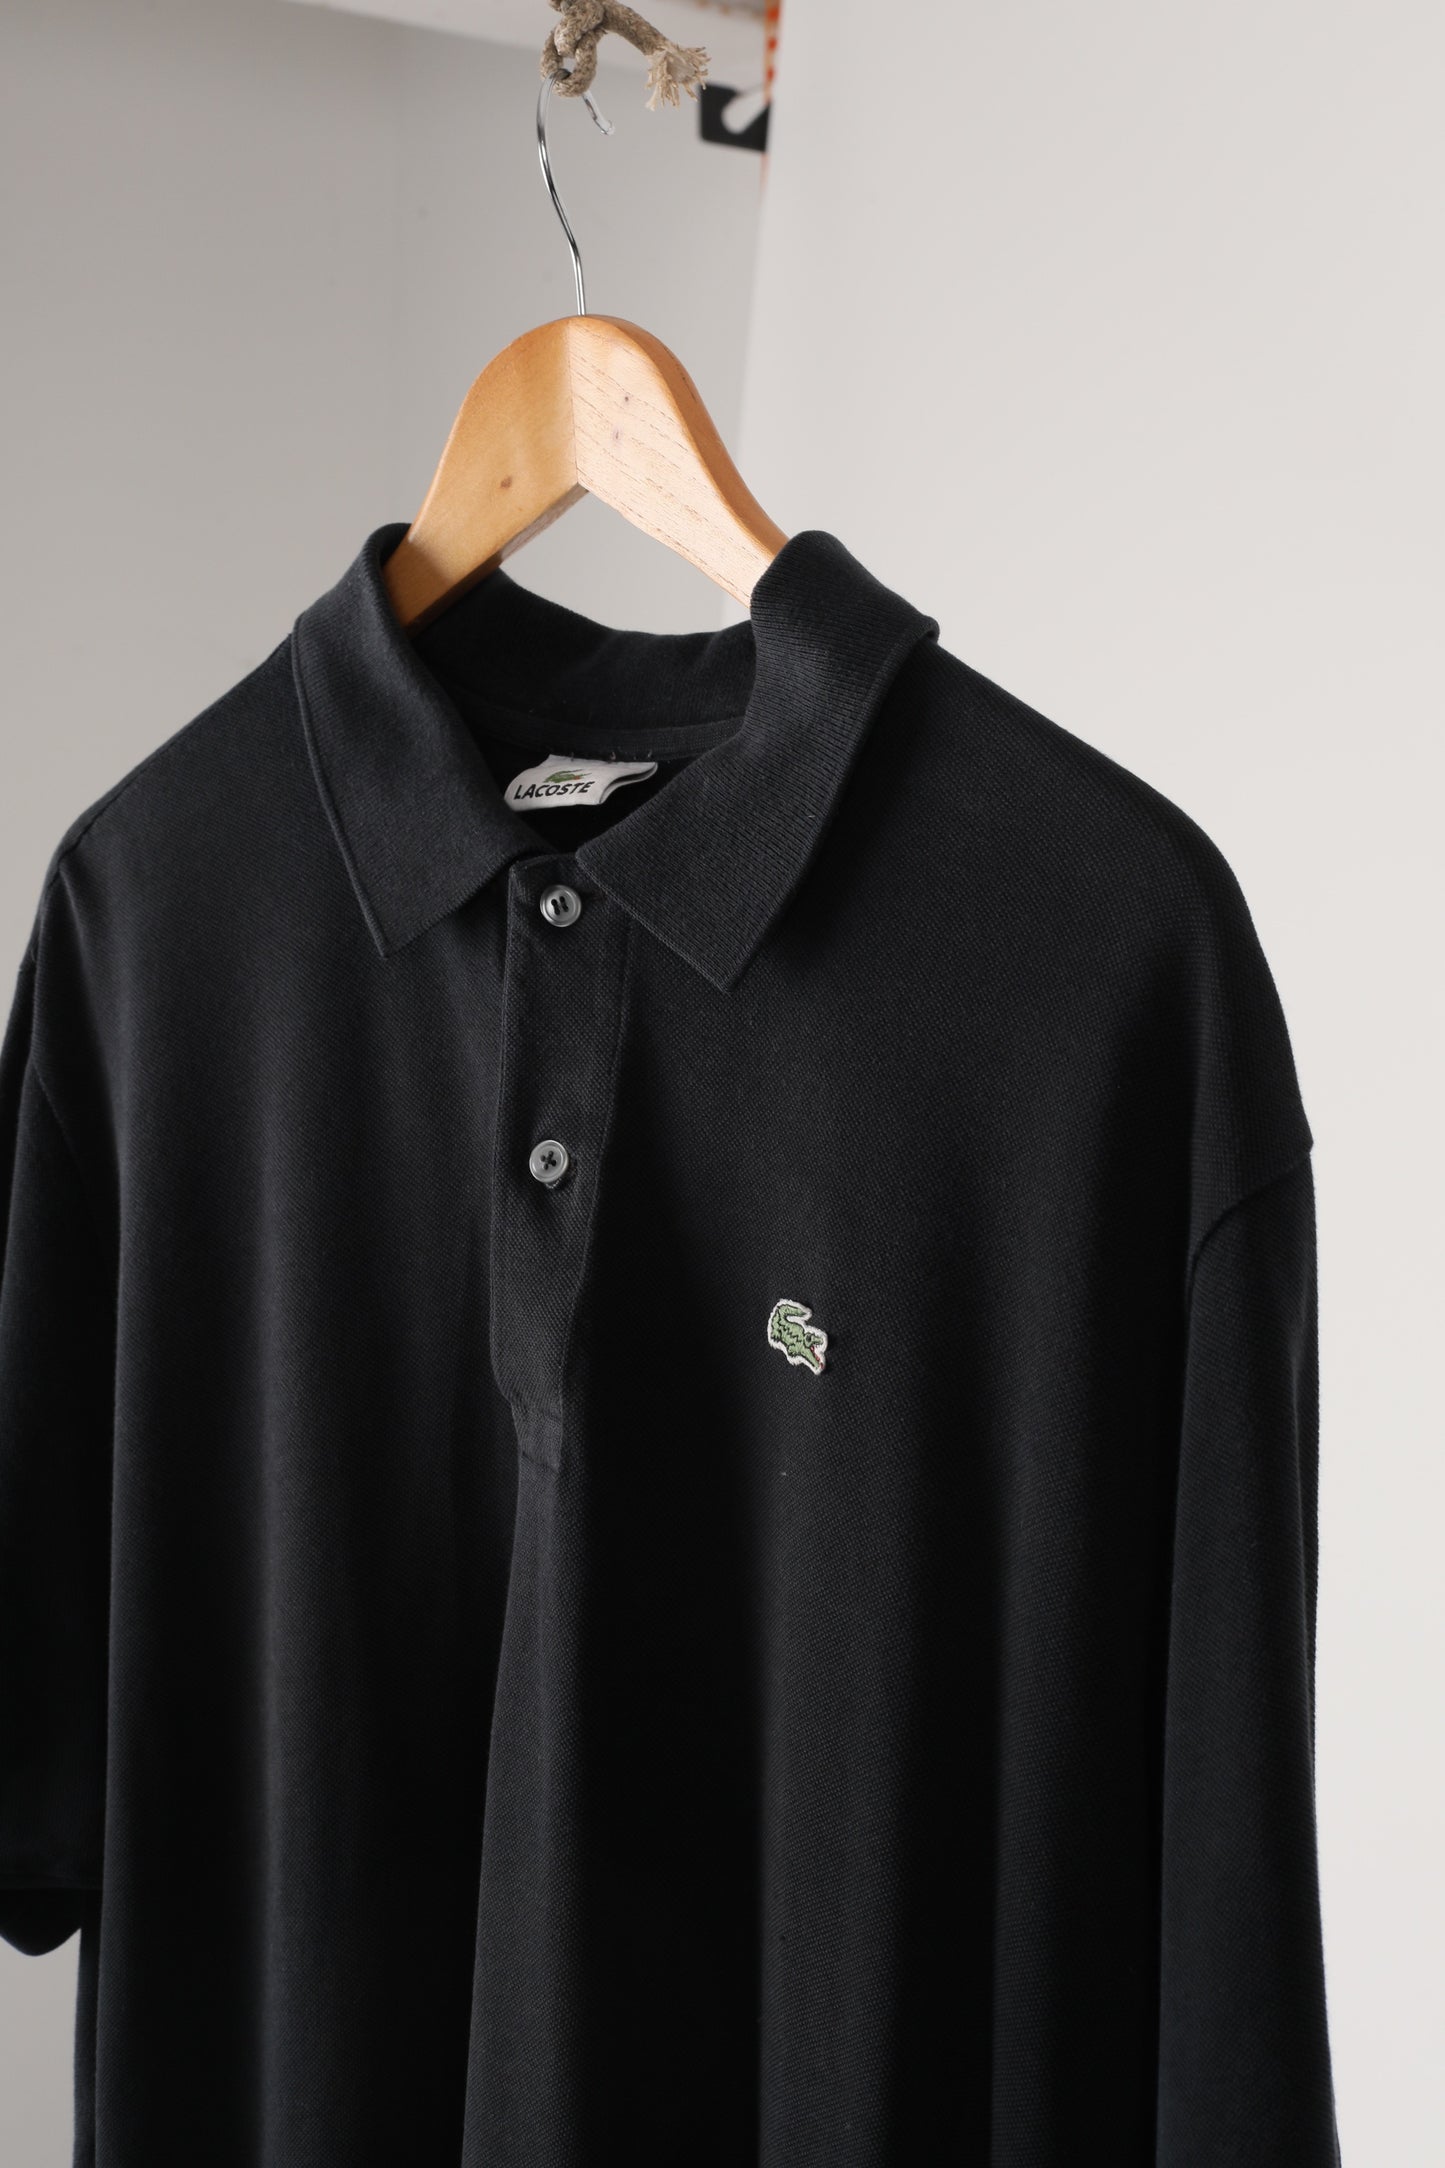 Lacoste pique cotton polo shirt (8)